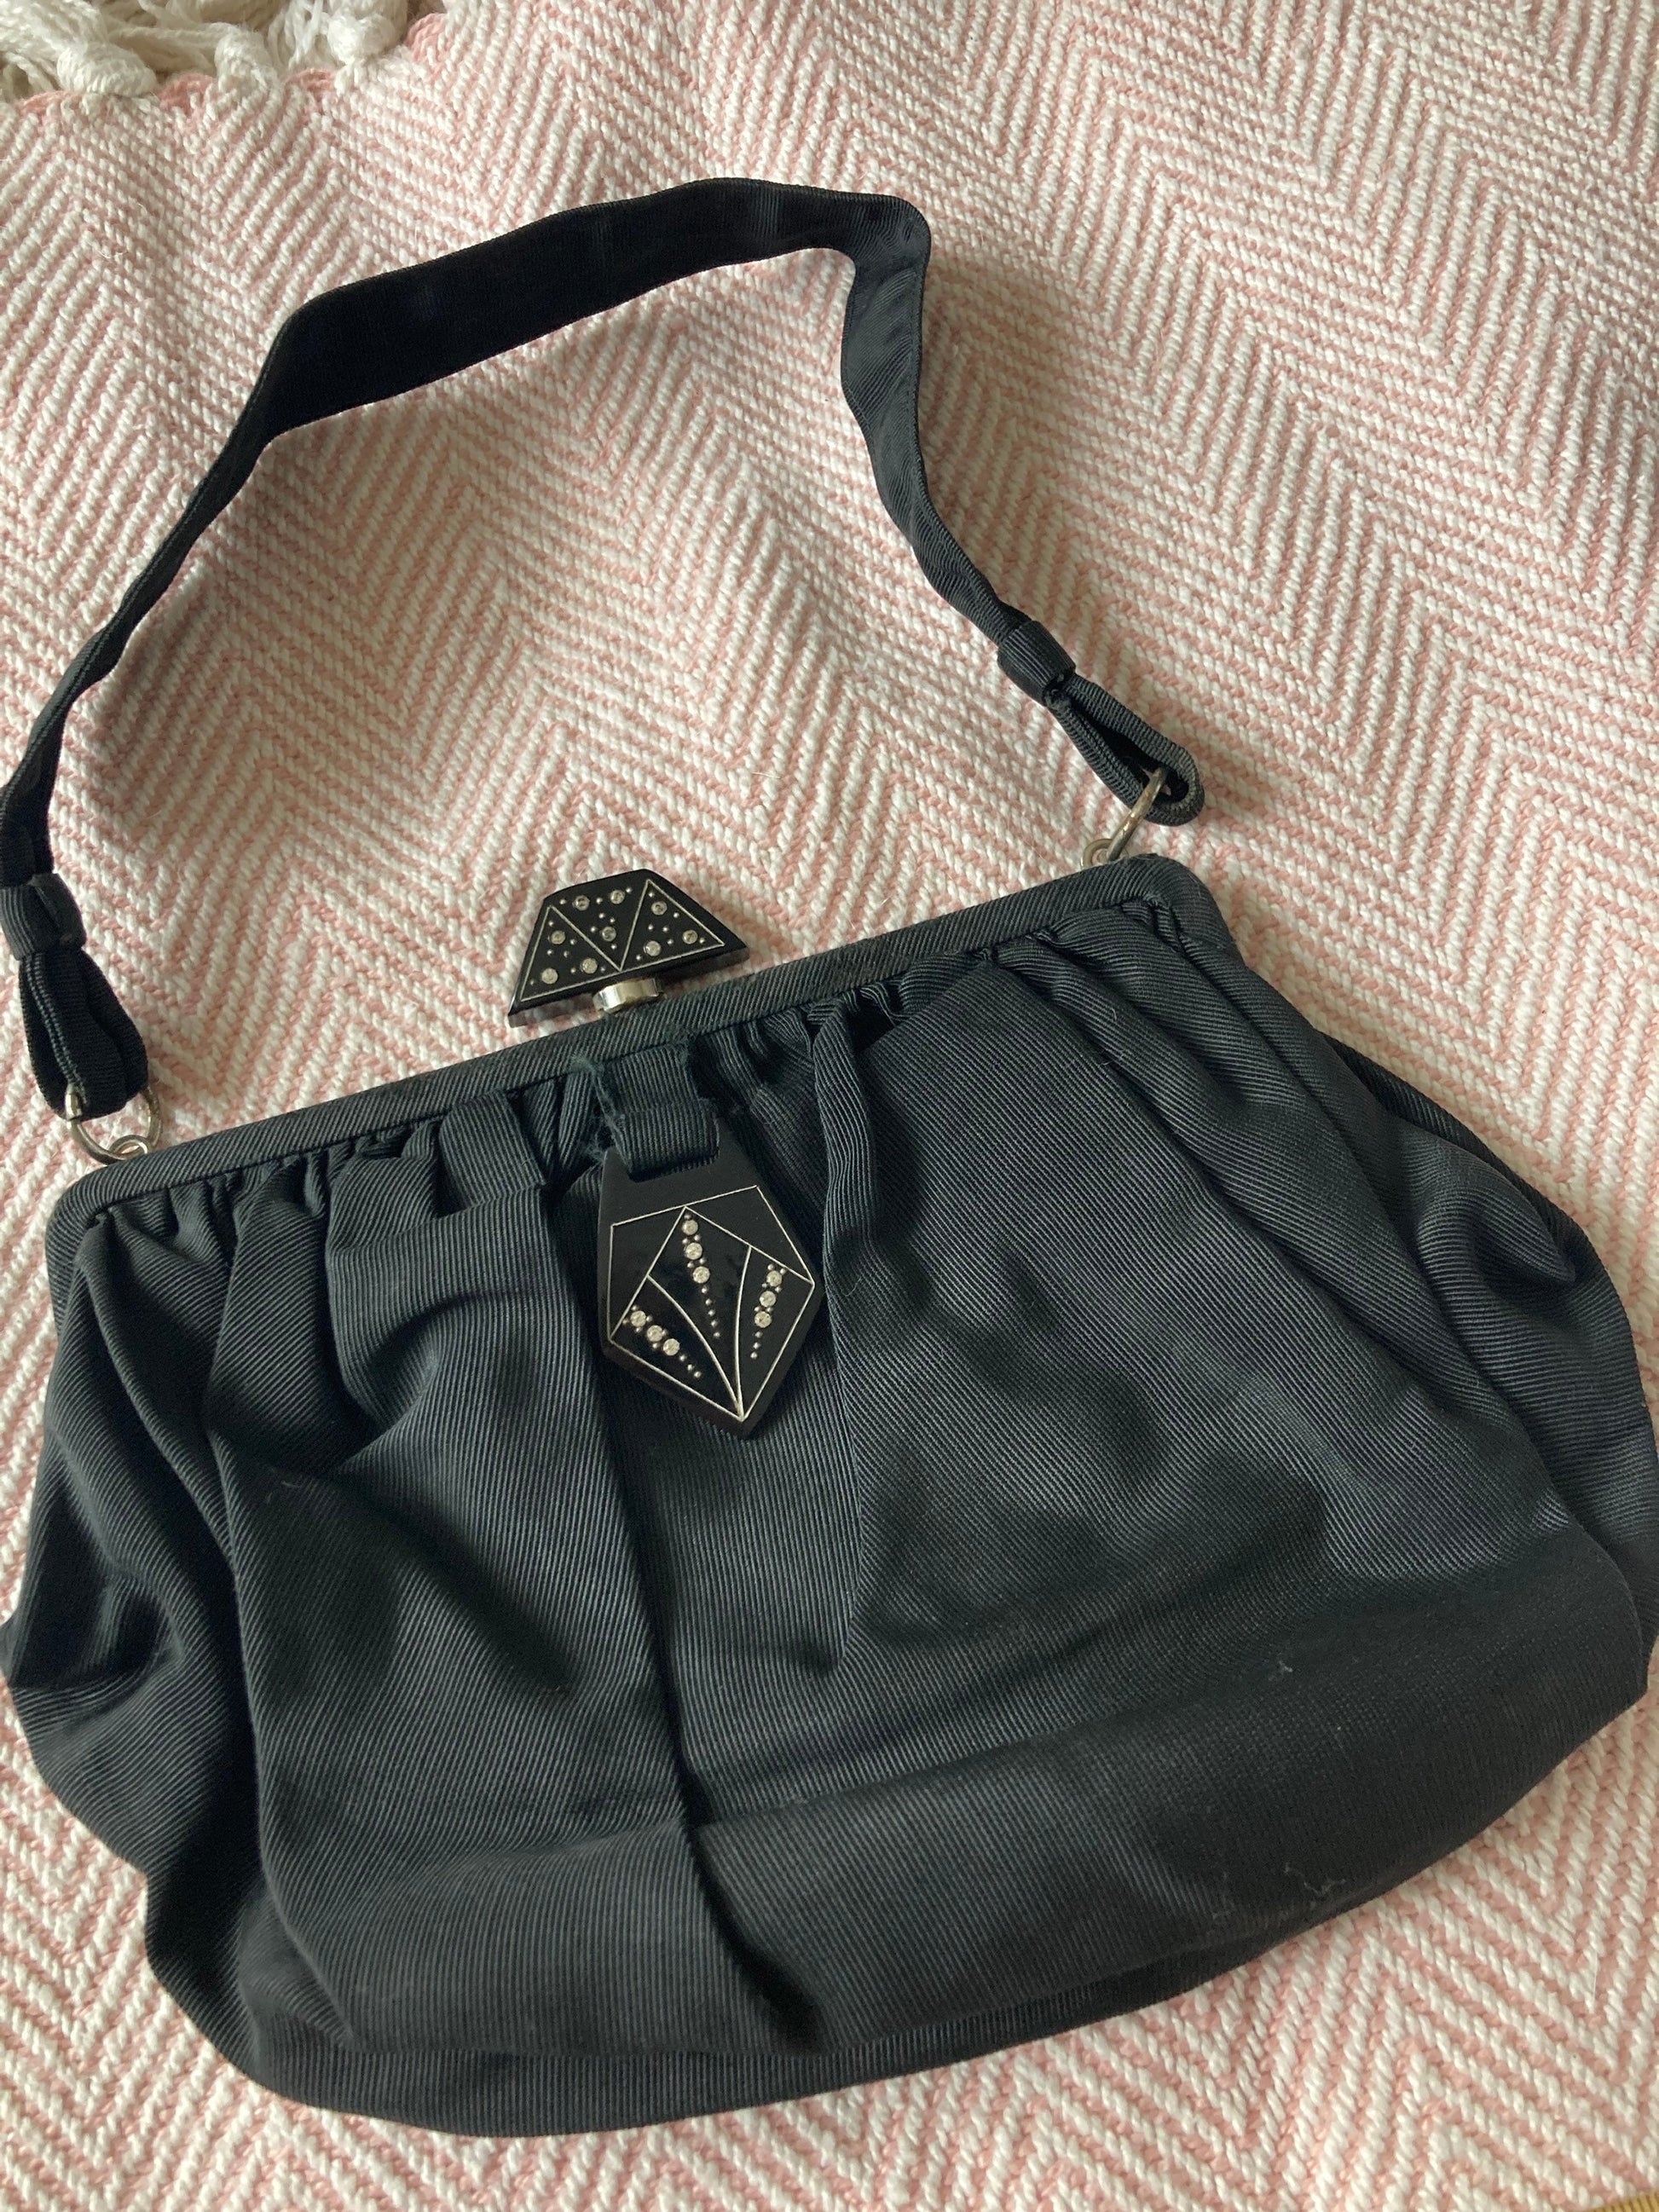 Vintage Art Deco black crepe Evening Bag Purse Diamanté Bakelite paste set Clasp